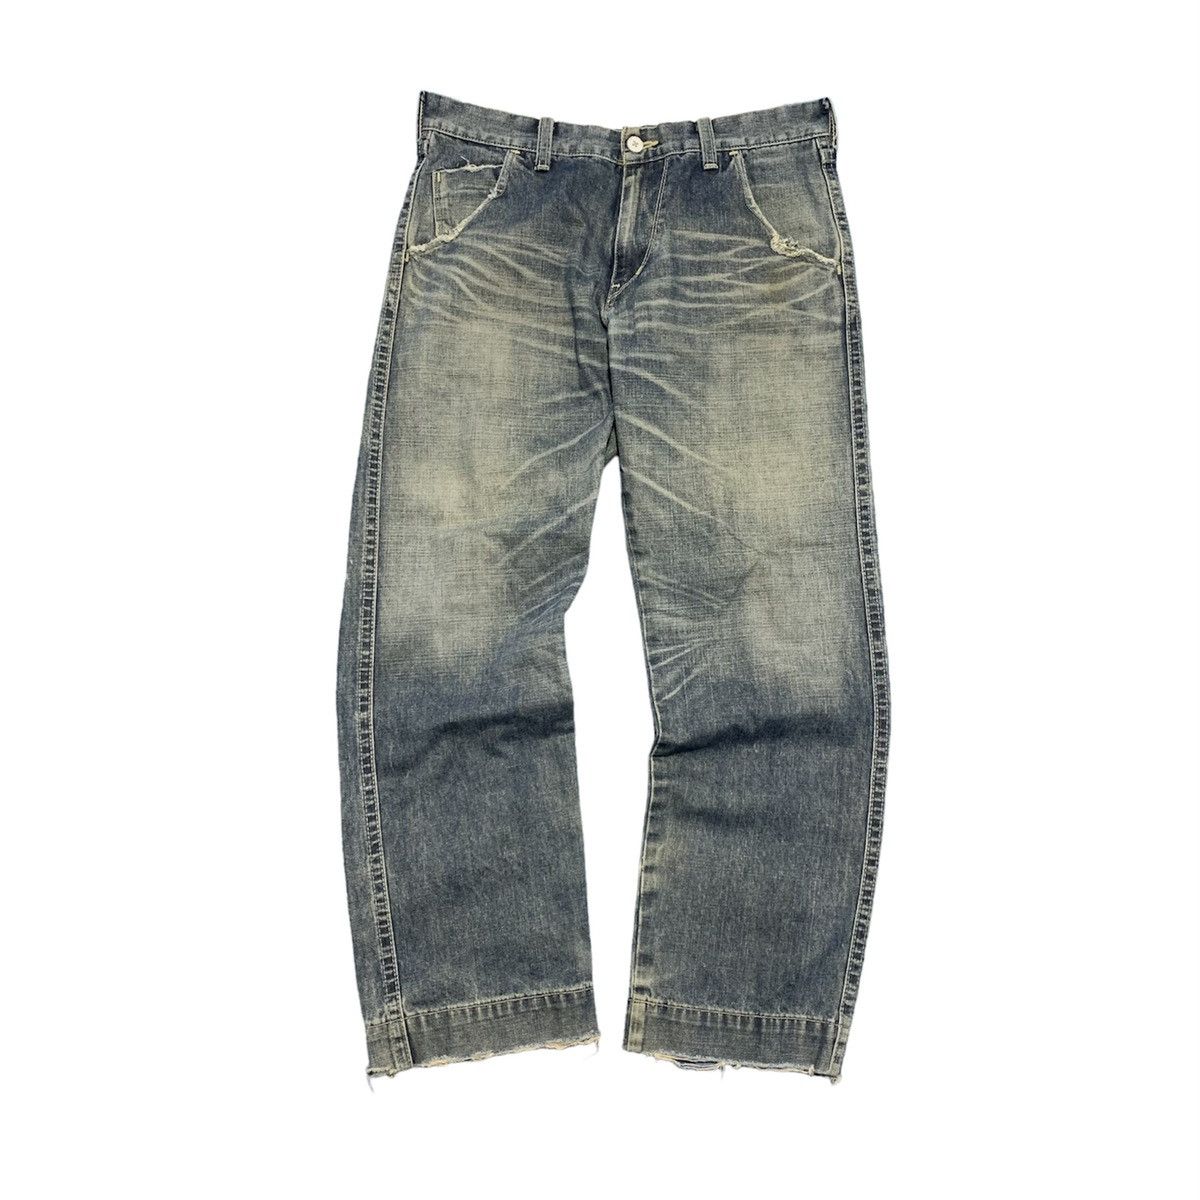 Vintage Takashi Murakami x Levis Sanforized jeans